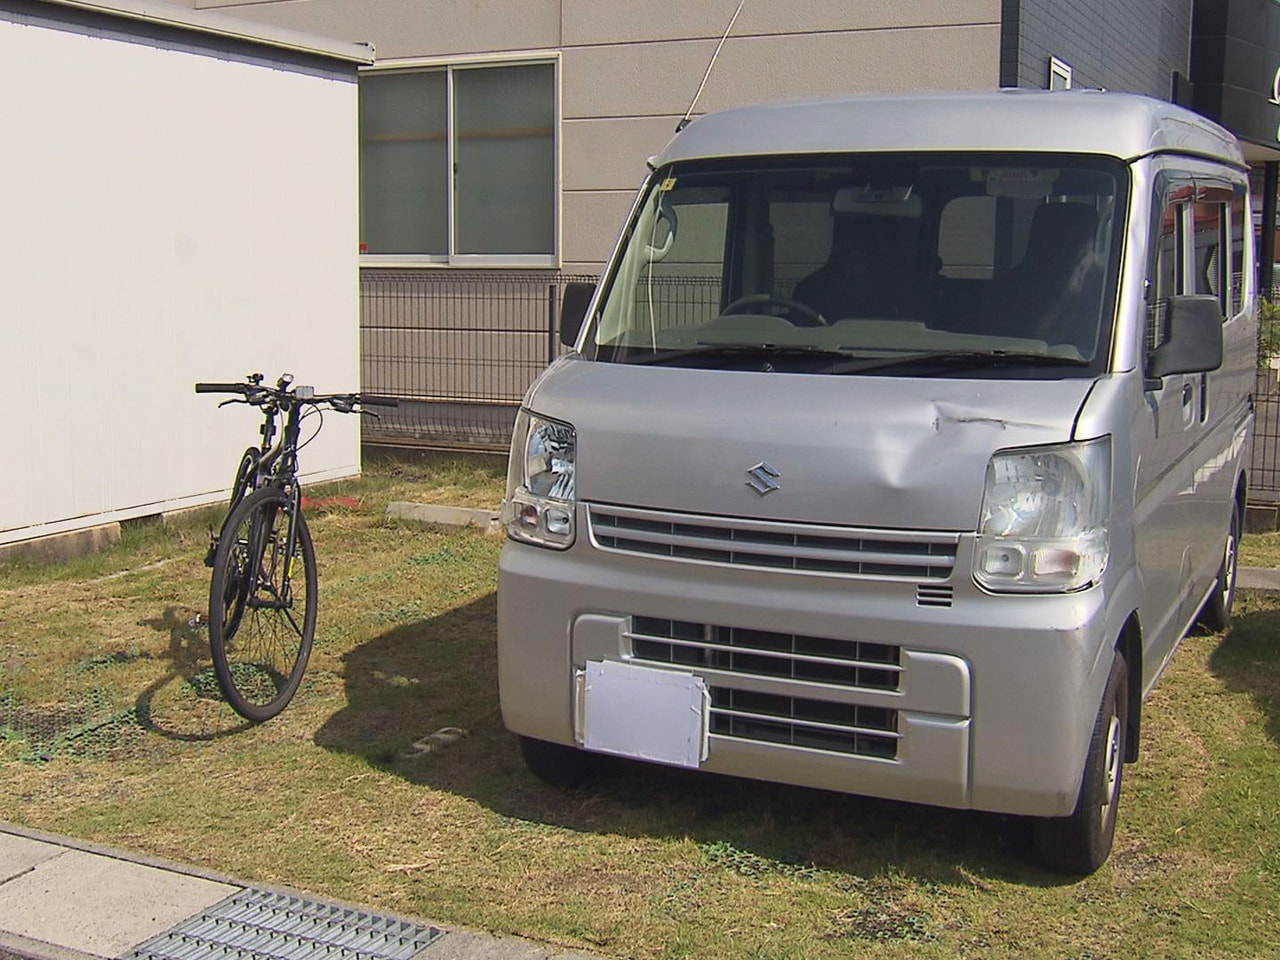 ３０日朝、岐阜市の市道で自転車の男子高校生が軽ワンボックスカーにはねられ、意識不...